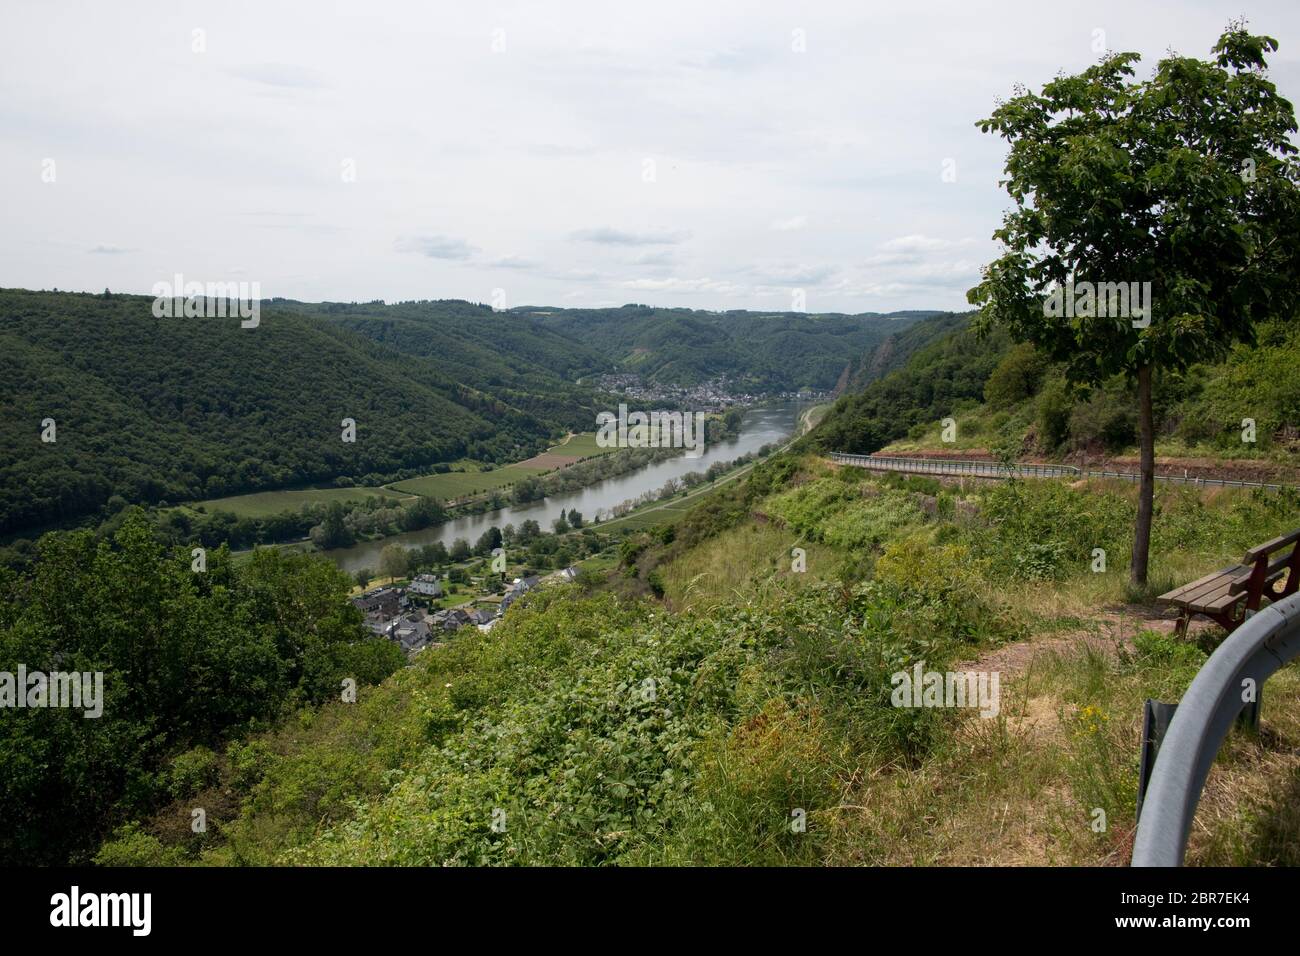 Blick vom Valwiggerberg ins Moseltal auf Cochem-Sehl, Valwig, Rheinland-Pfalz, Deutschland Stock Photo